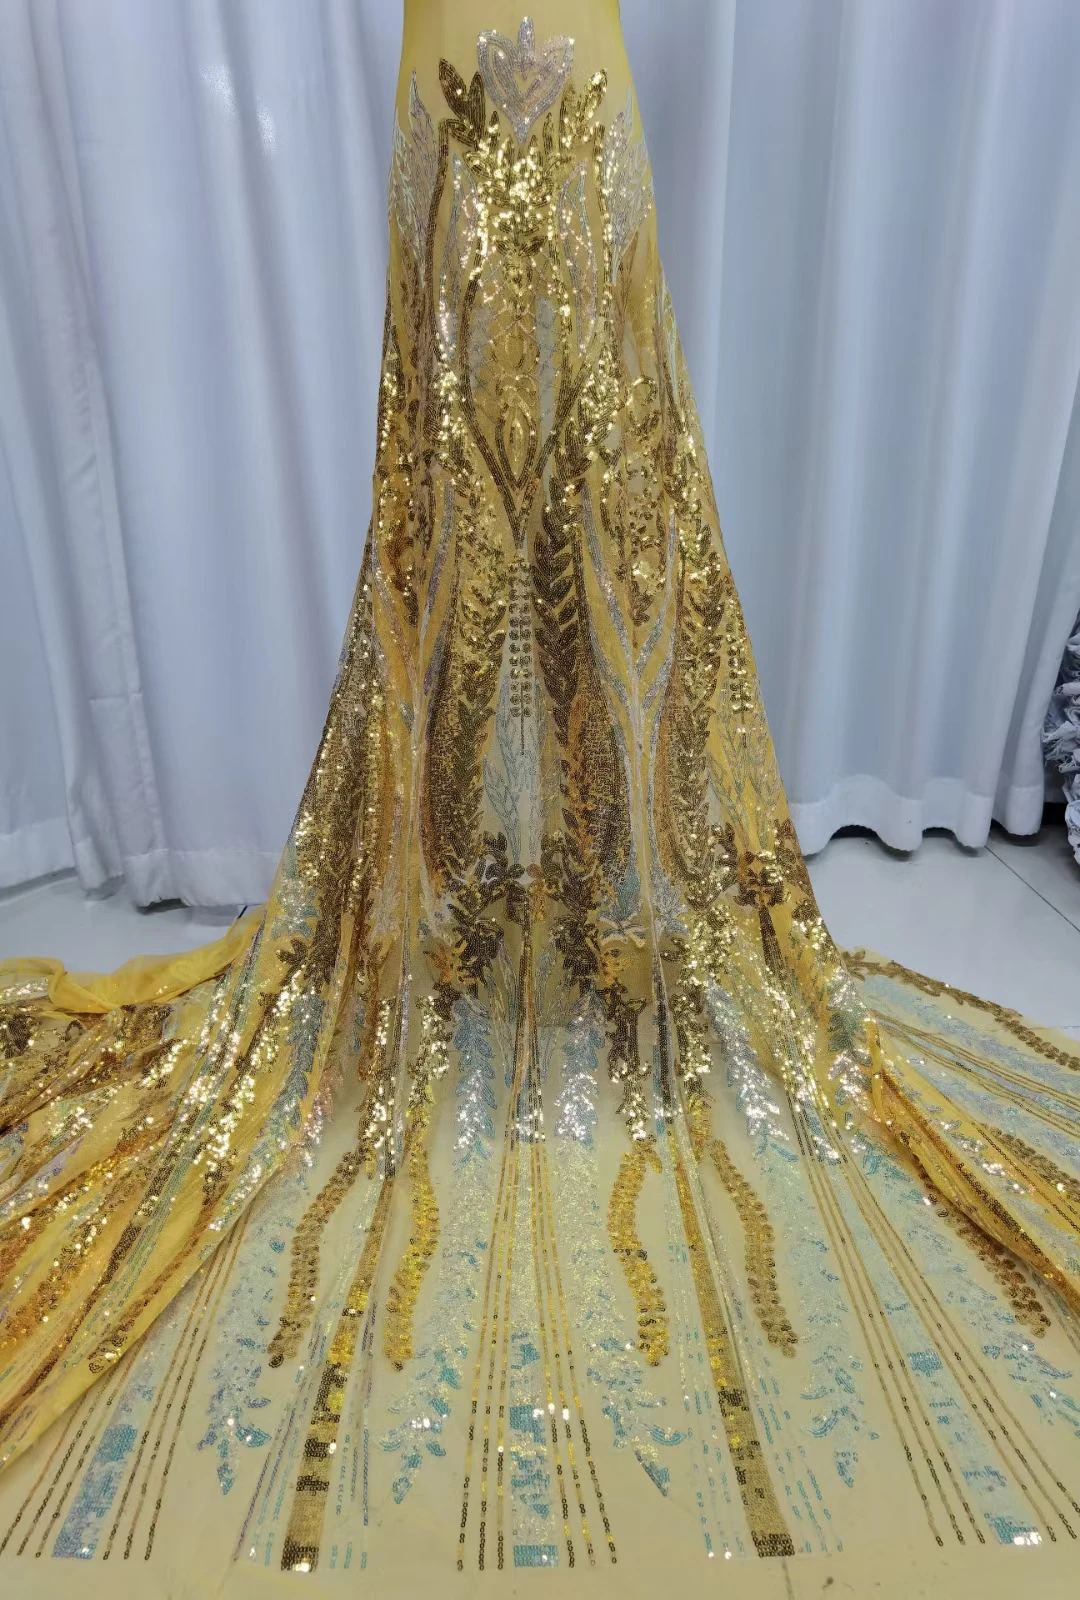 

Кружевная ткань для свадебного платья nn756 _ K, с вышивкой и блестками, Классическая, новейшая модель 2021 года